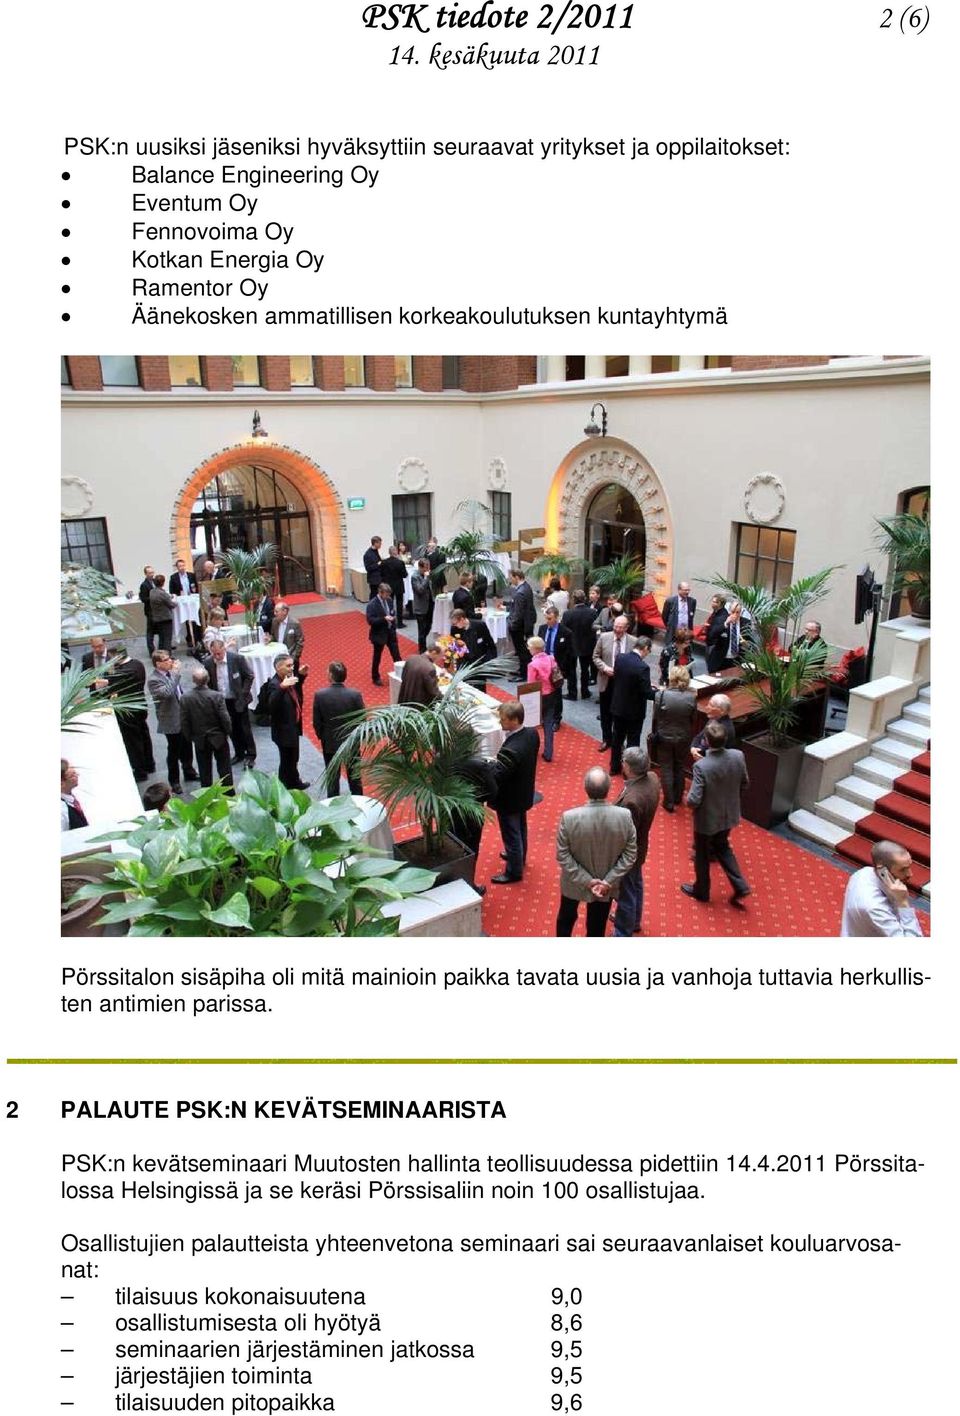 2 PALAUTE PSK:N KEVÄTSEMINAARISTA PSK:n kevätseminaari Muutosten hallinta teollisuudessa pidettiin 14.4.2011 Pörssitalossa Helsingissä ja se keräsi Pörssisaliin noin 100 osallistujaa.